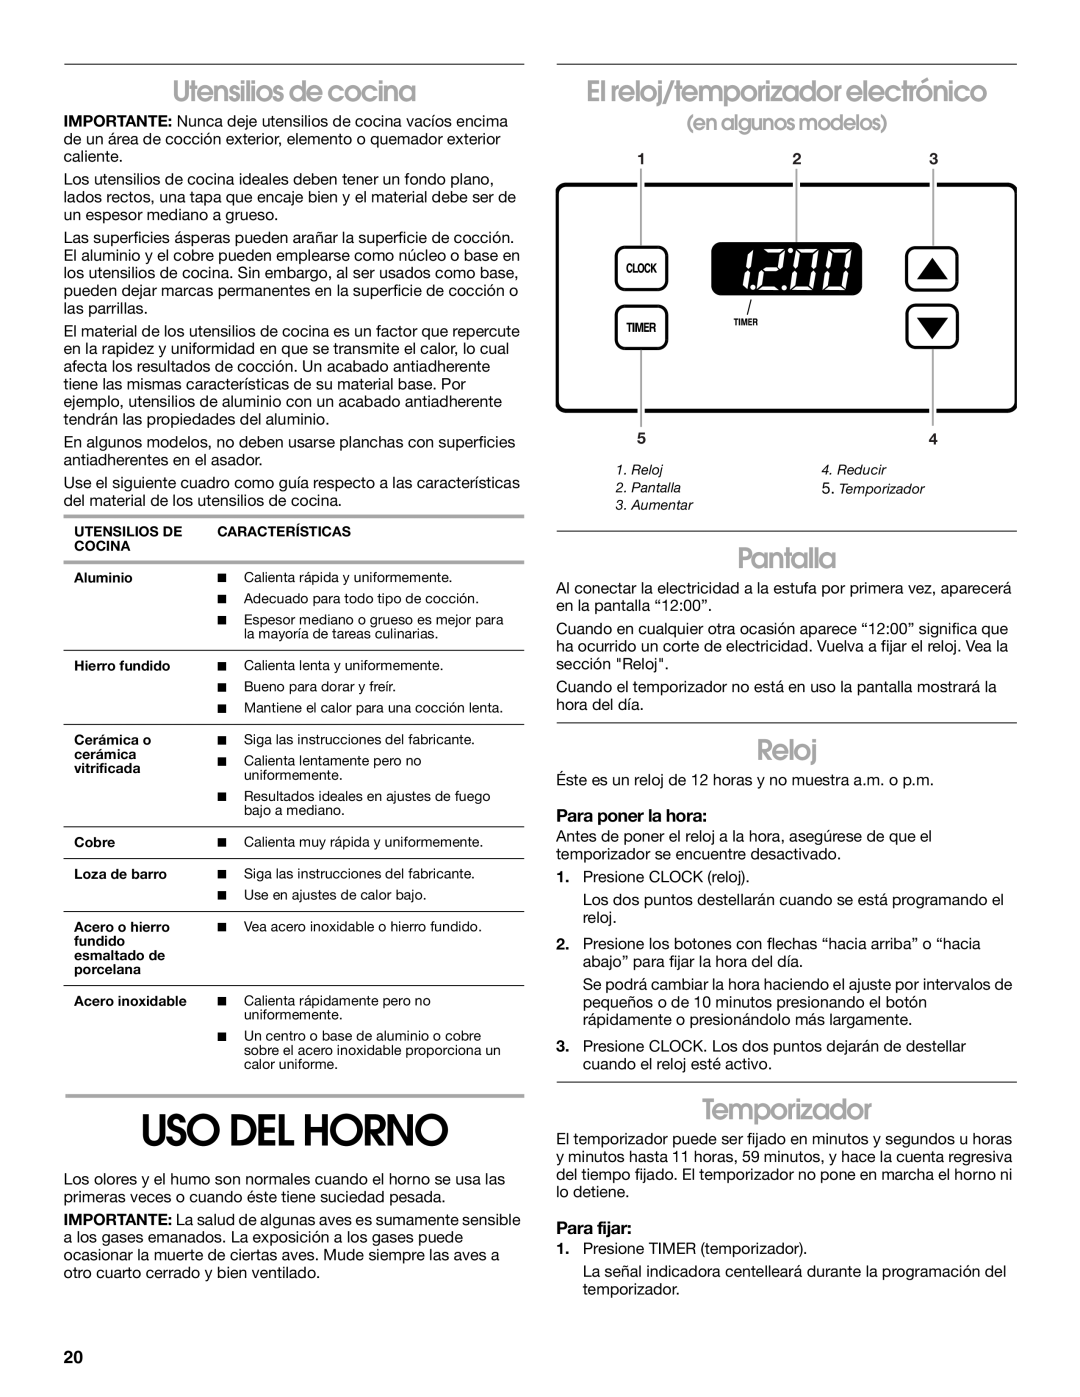 Whirlpool TGP305RV1 Uso Del Horno, Utensilios de cocina, El reloj/temporizador electrónico, Pantalla, Reloj, Temporizador 